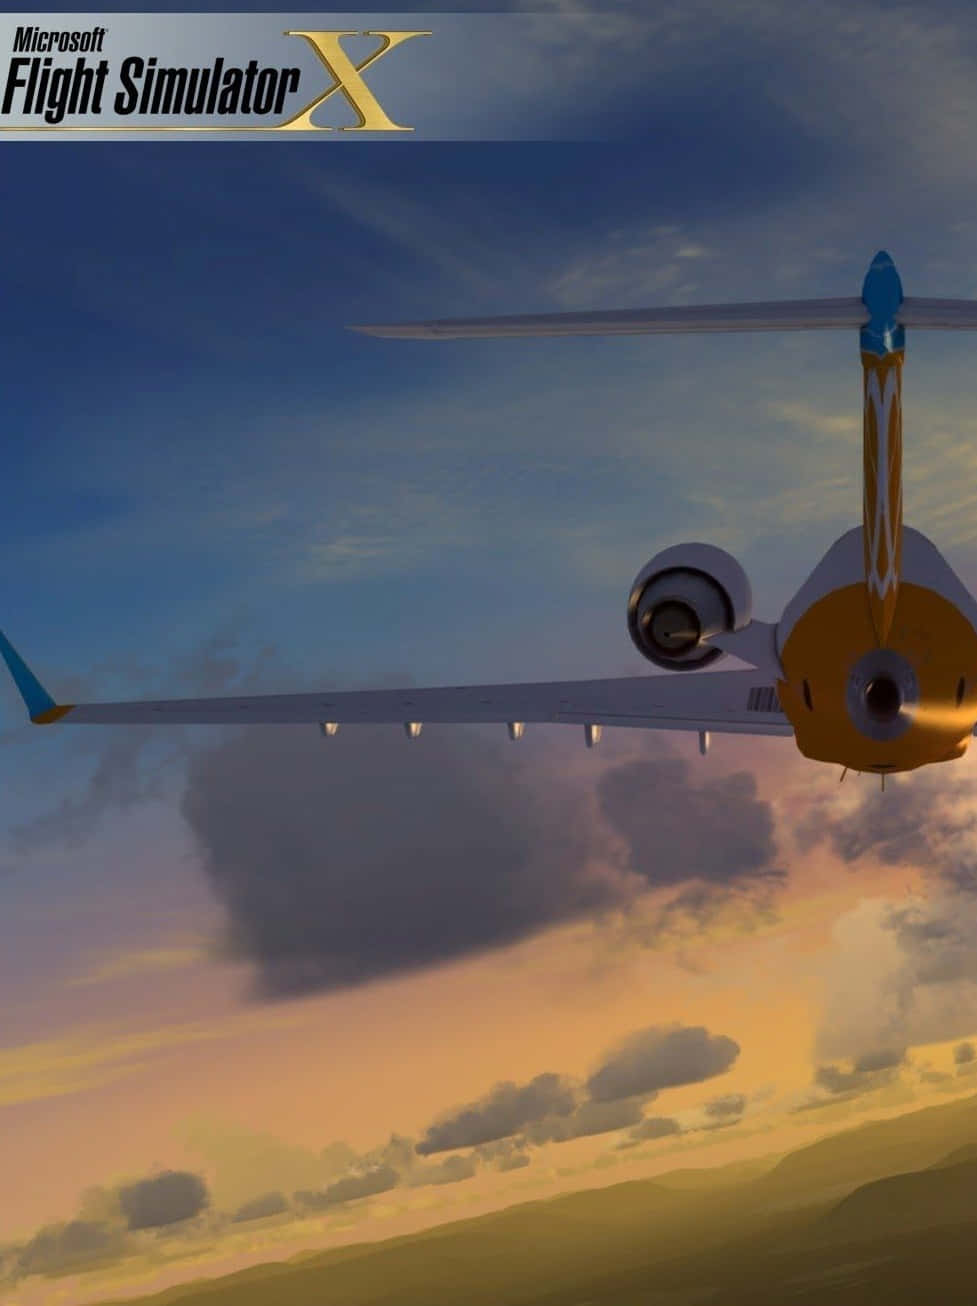 'äventyretväntar I Android Microsoft Flight Simulator!'